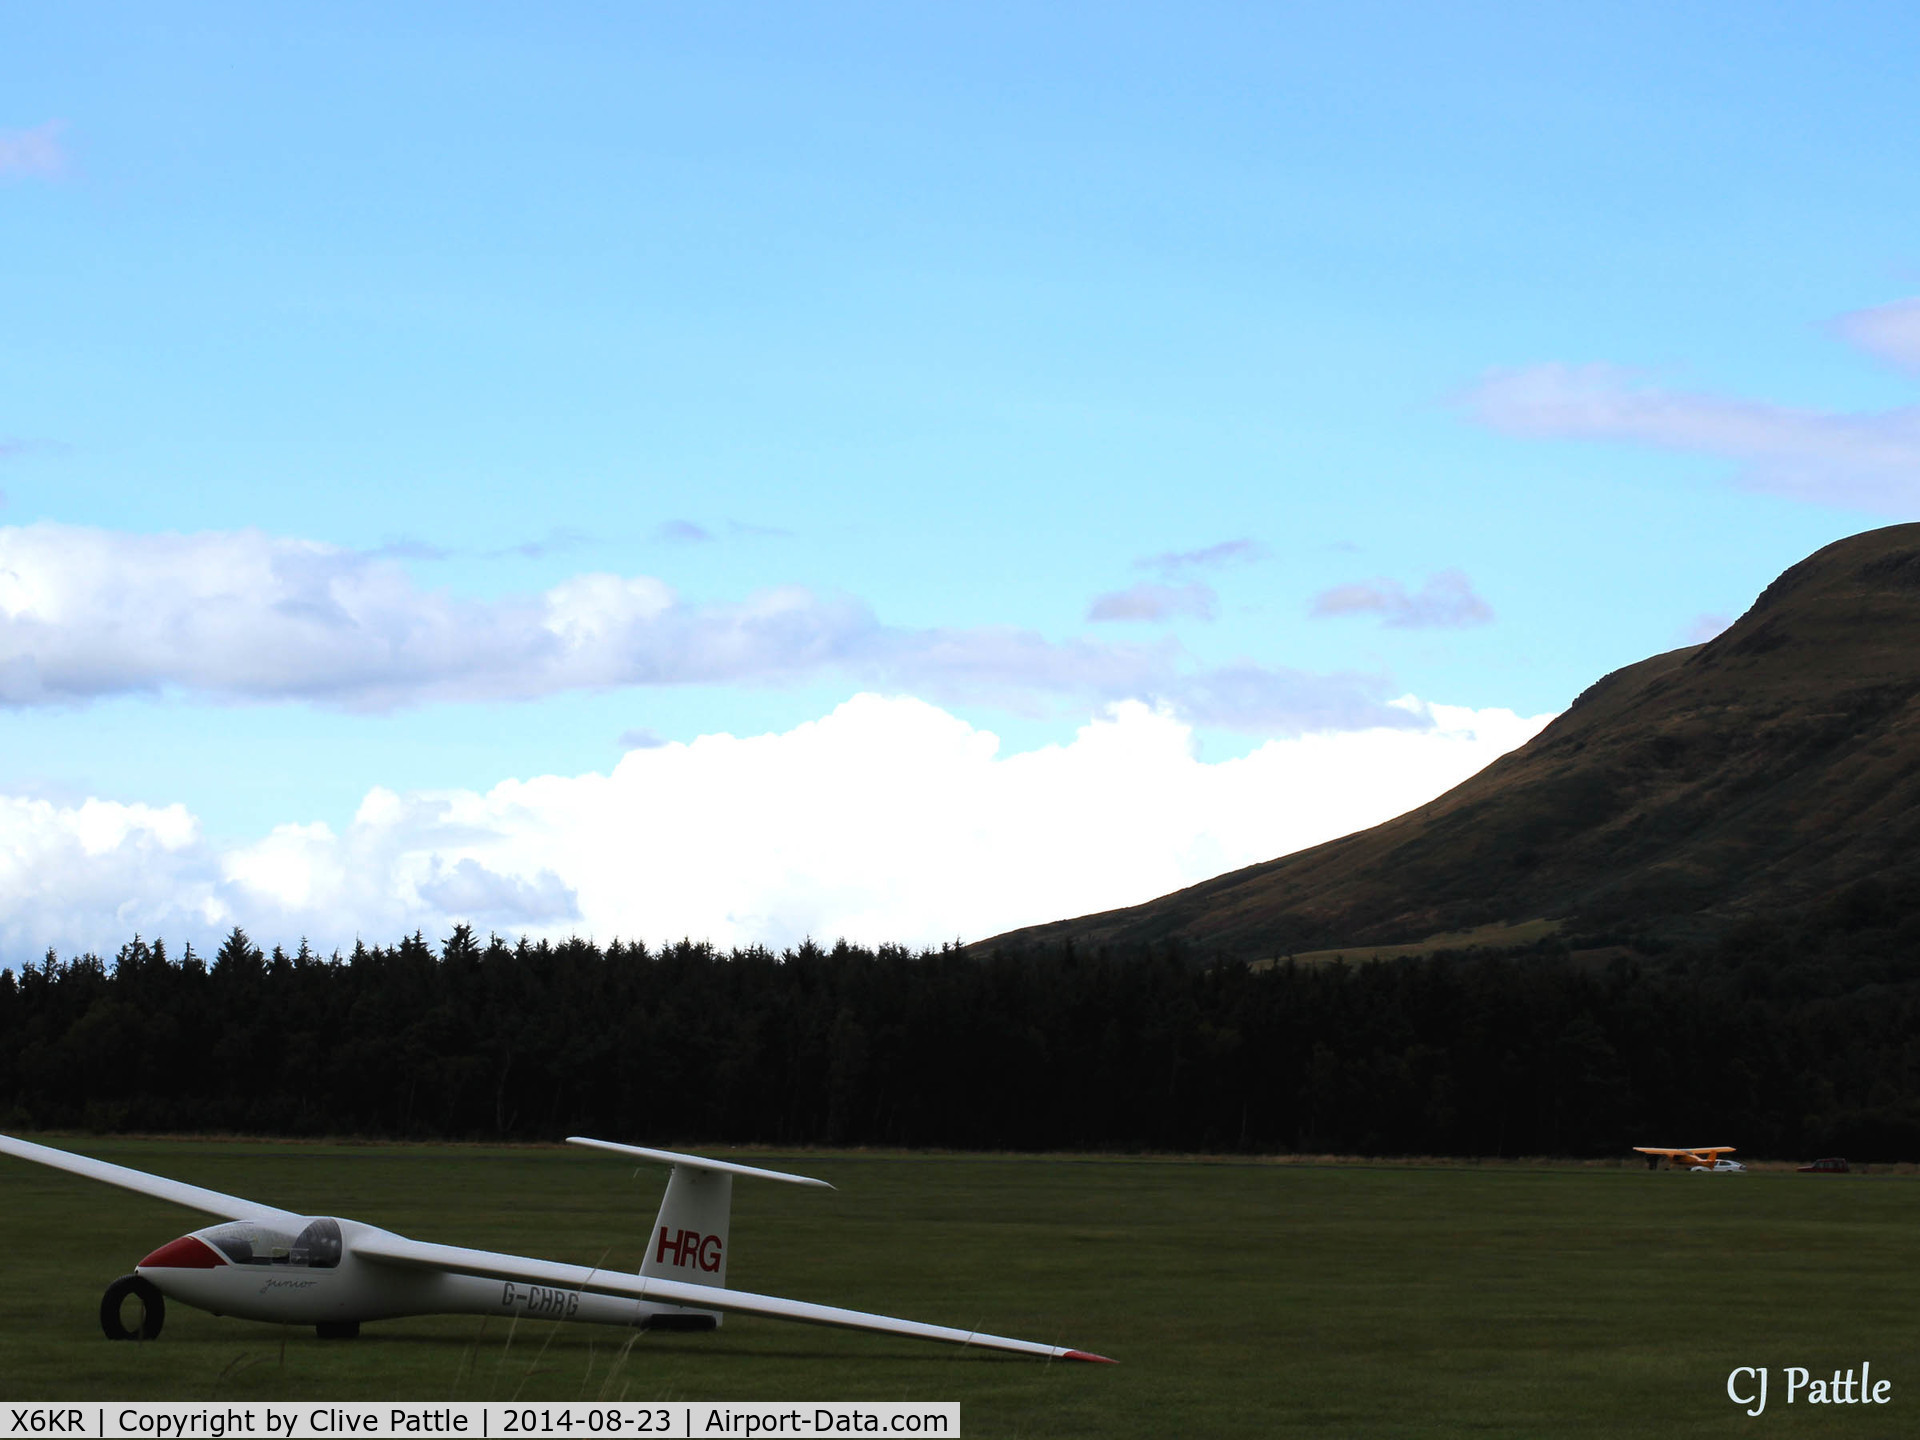 X6KR Airport - An evening view of Portmoak Gliding airfield, Kinross, Scotland.